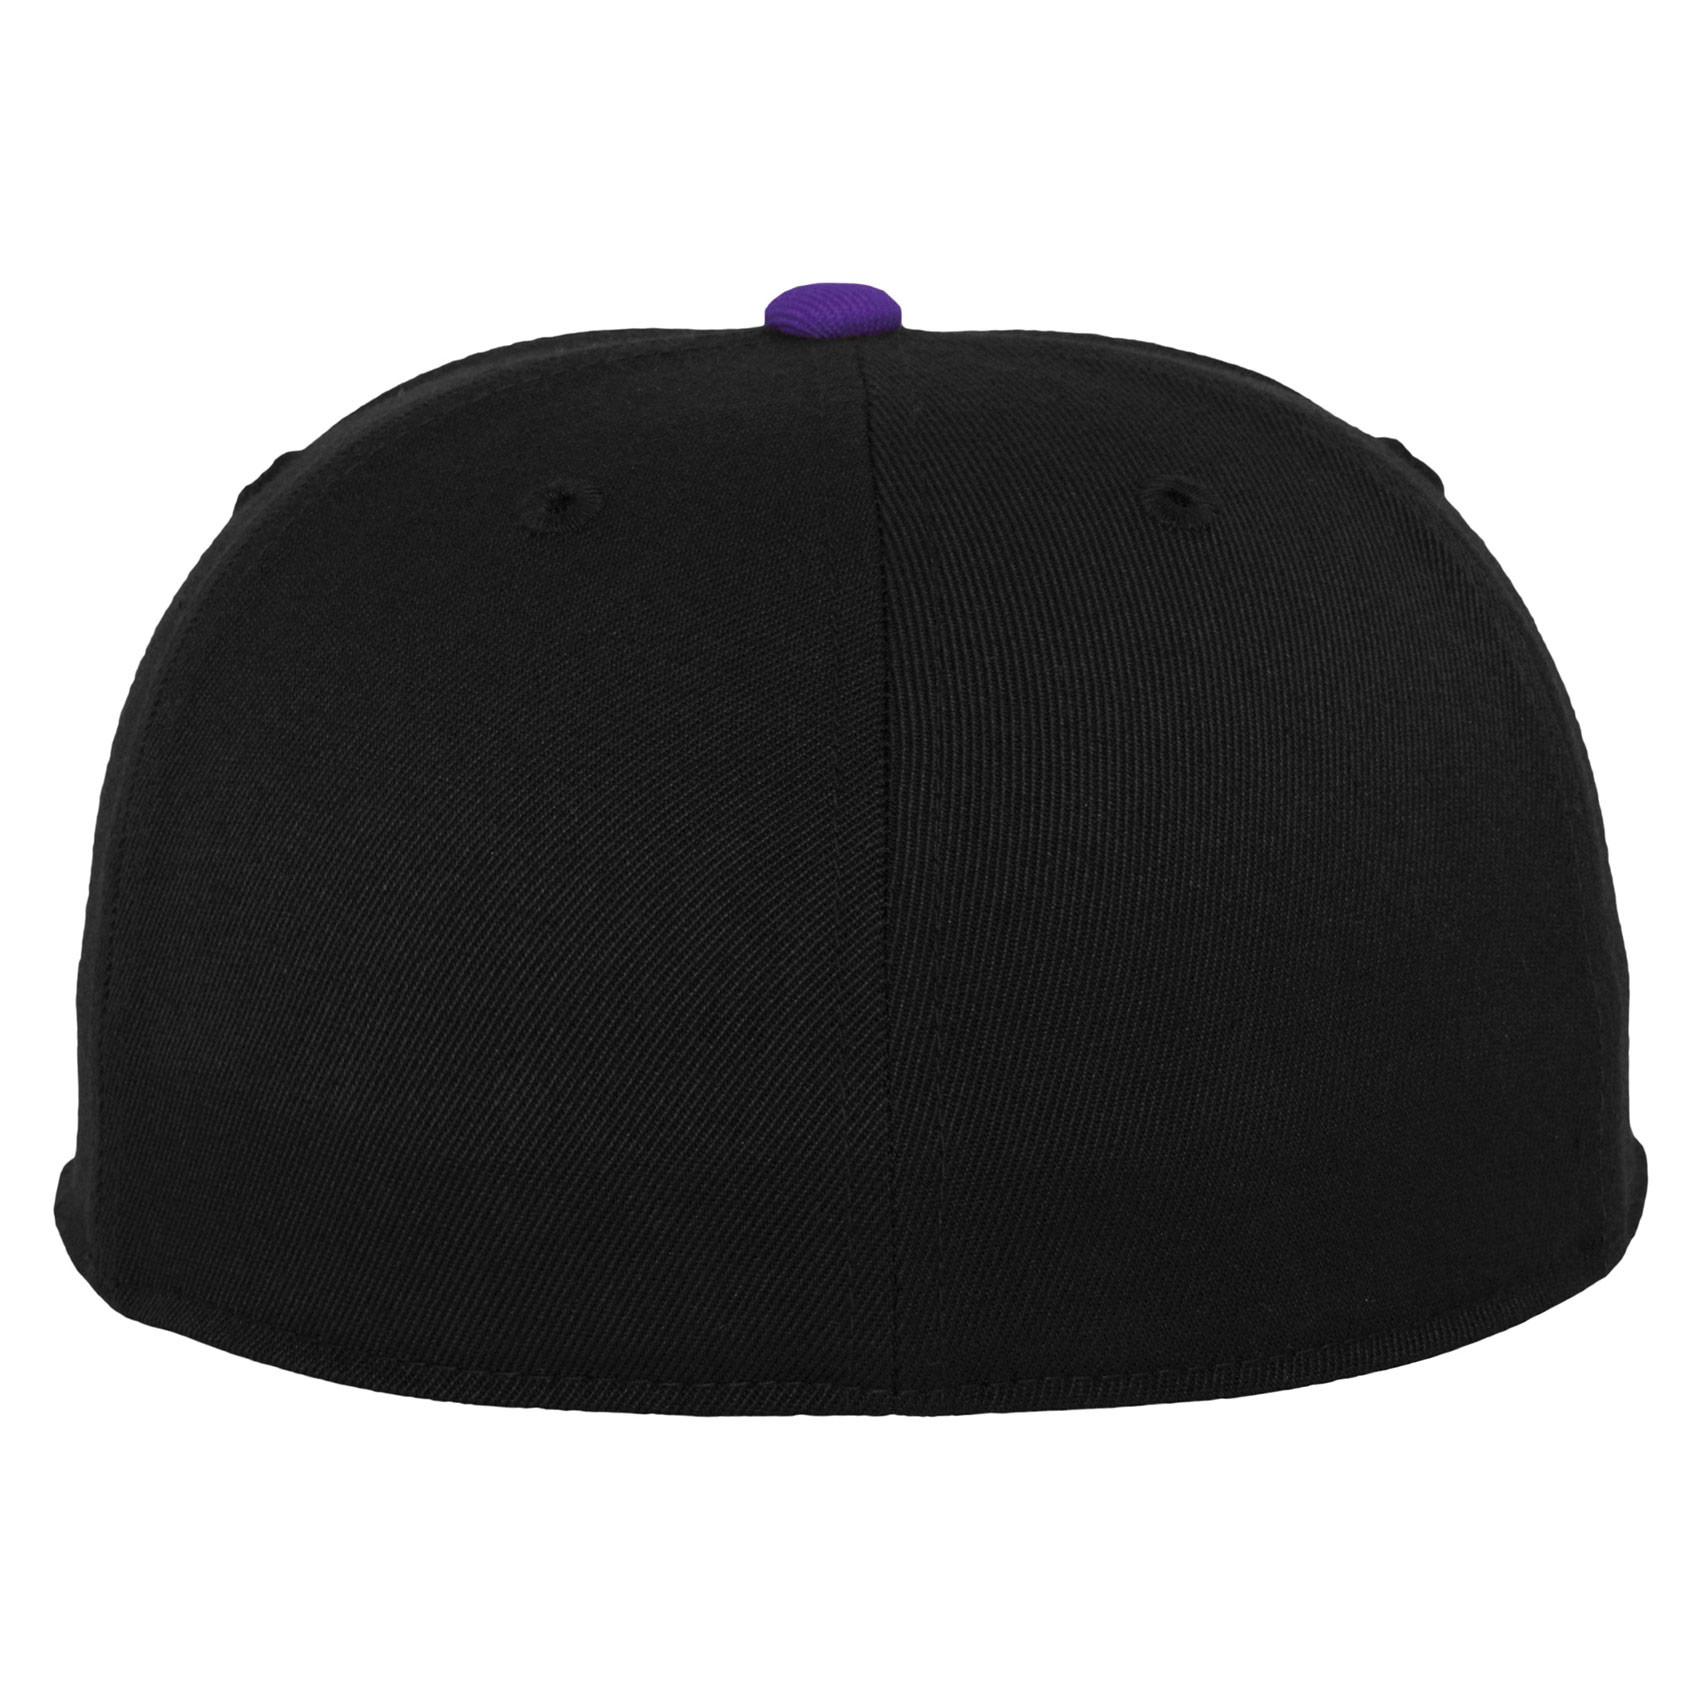 Flexfit Fullcap Premium 210 Fitted 2-Tone (black purple)